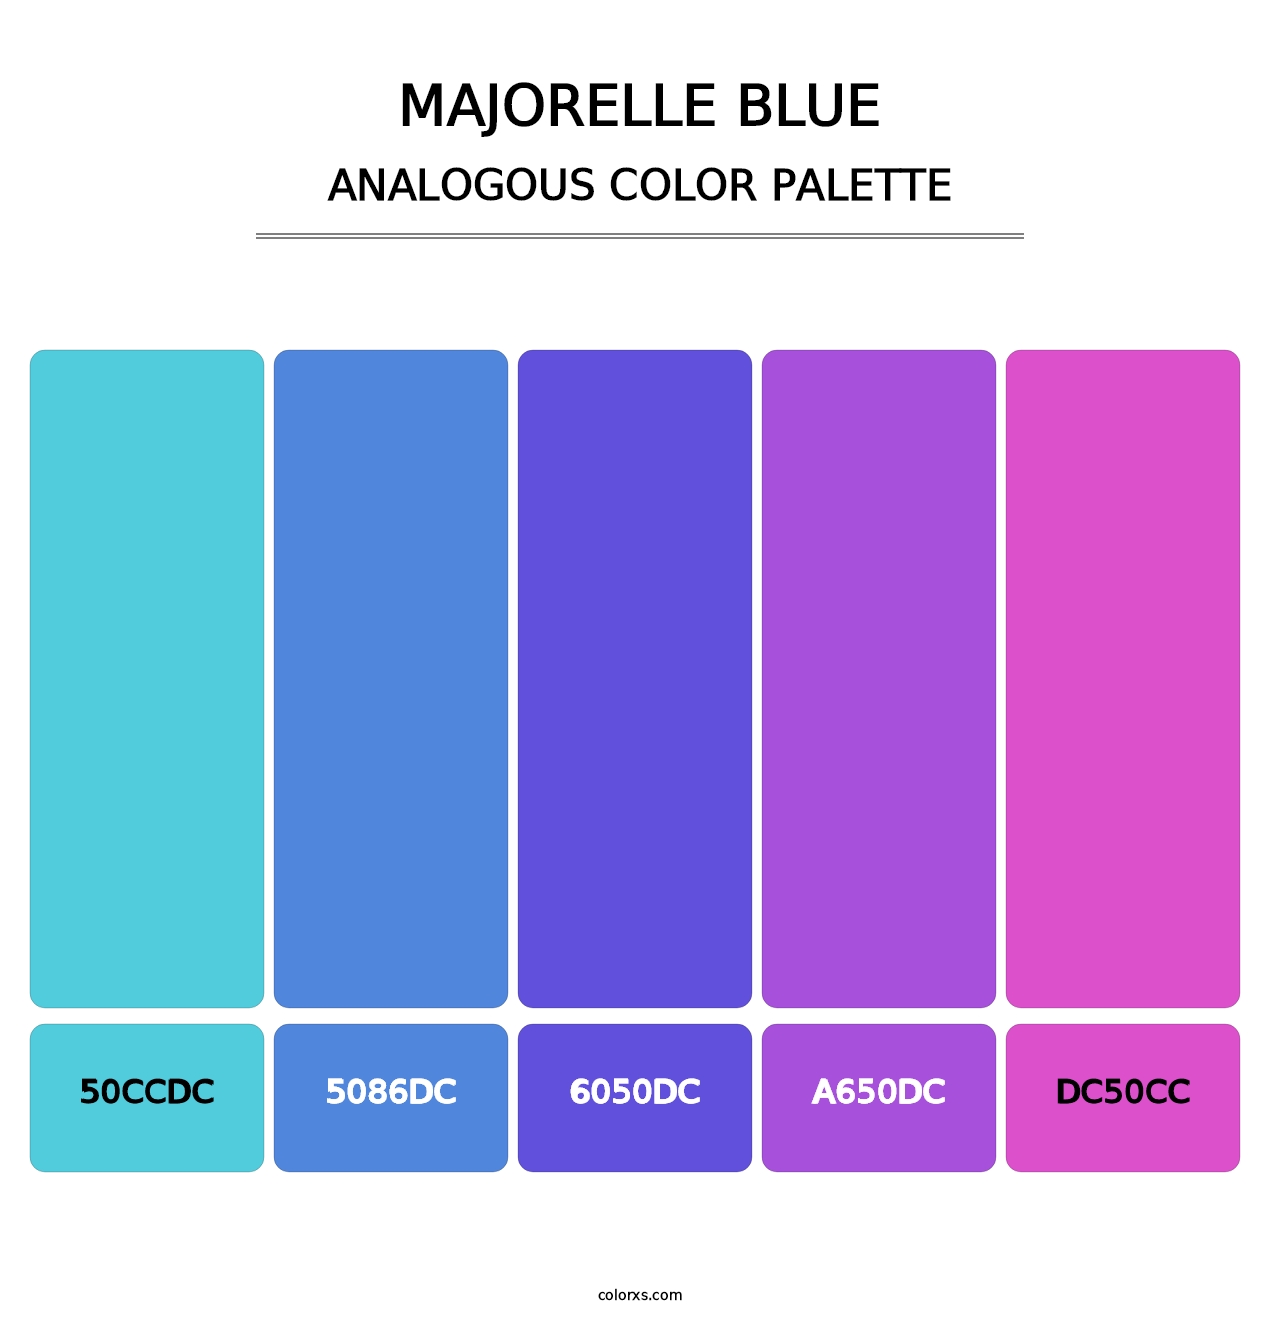 Majorelle Blue - Analogous Color Palette